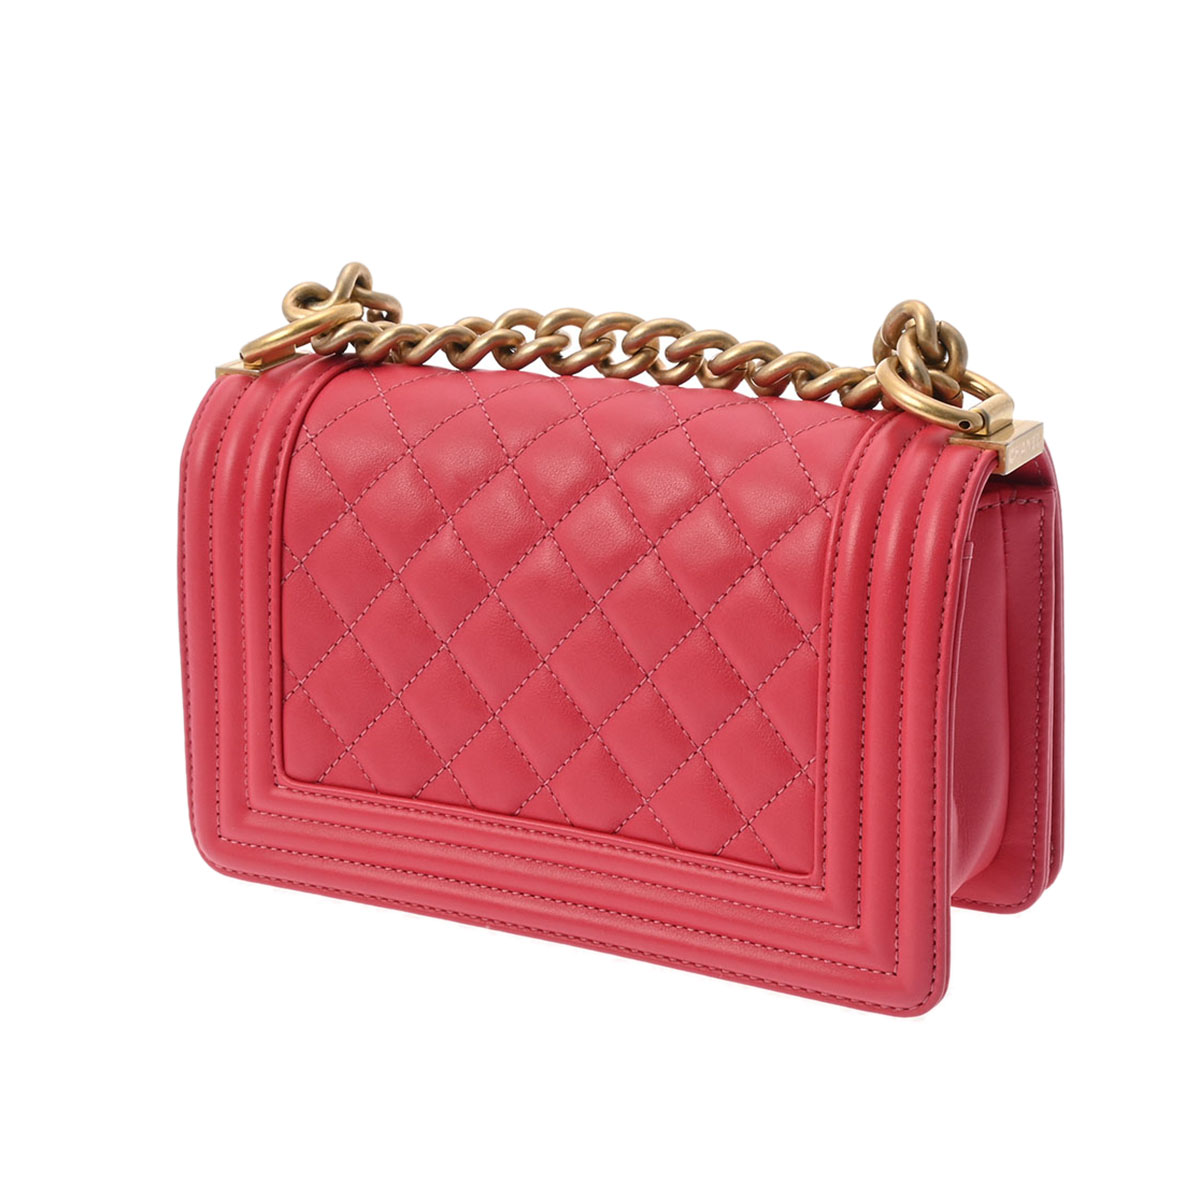 CHANEL Chanel Boy Chanel 20 цепь плечо розовый под старину Gold металлические принадлежности A67085 женский машина f сумка на плечо AB разряд б/у серебряный магазин 